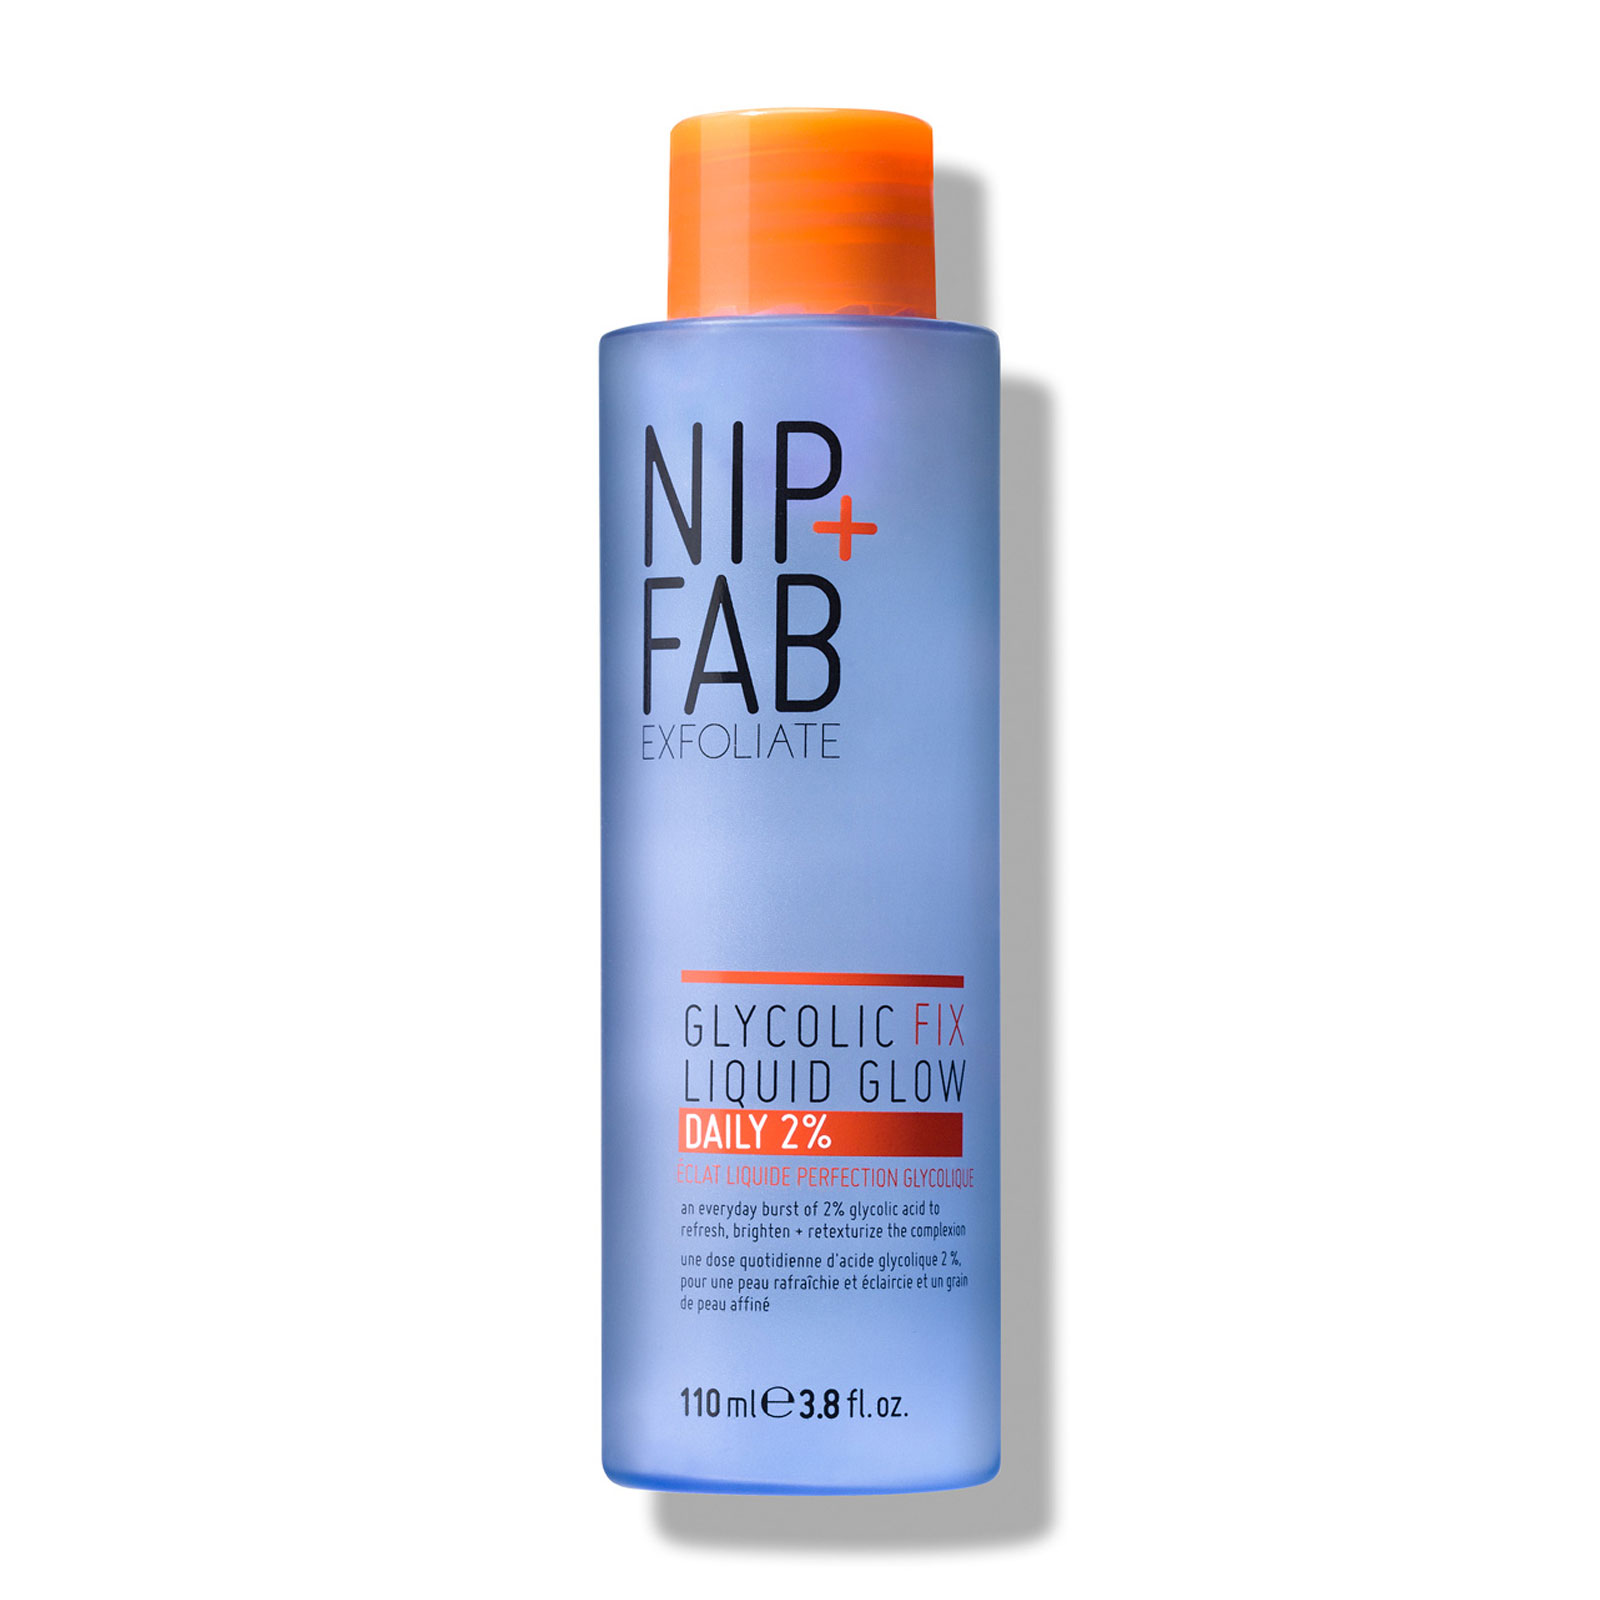 NIP+FAB 乙醇酸修护2%爽肤水 110ml